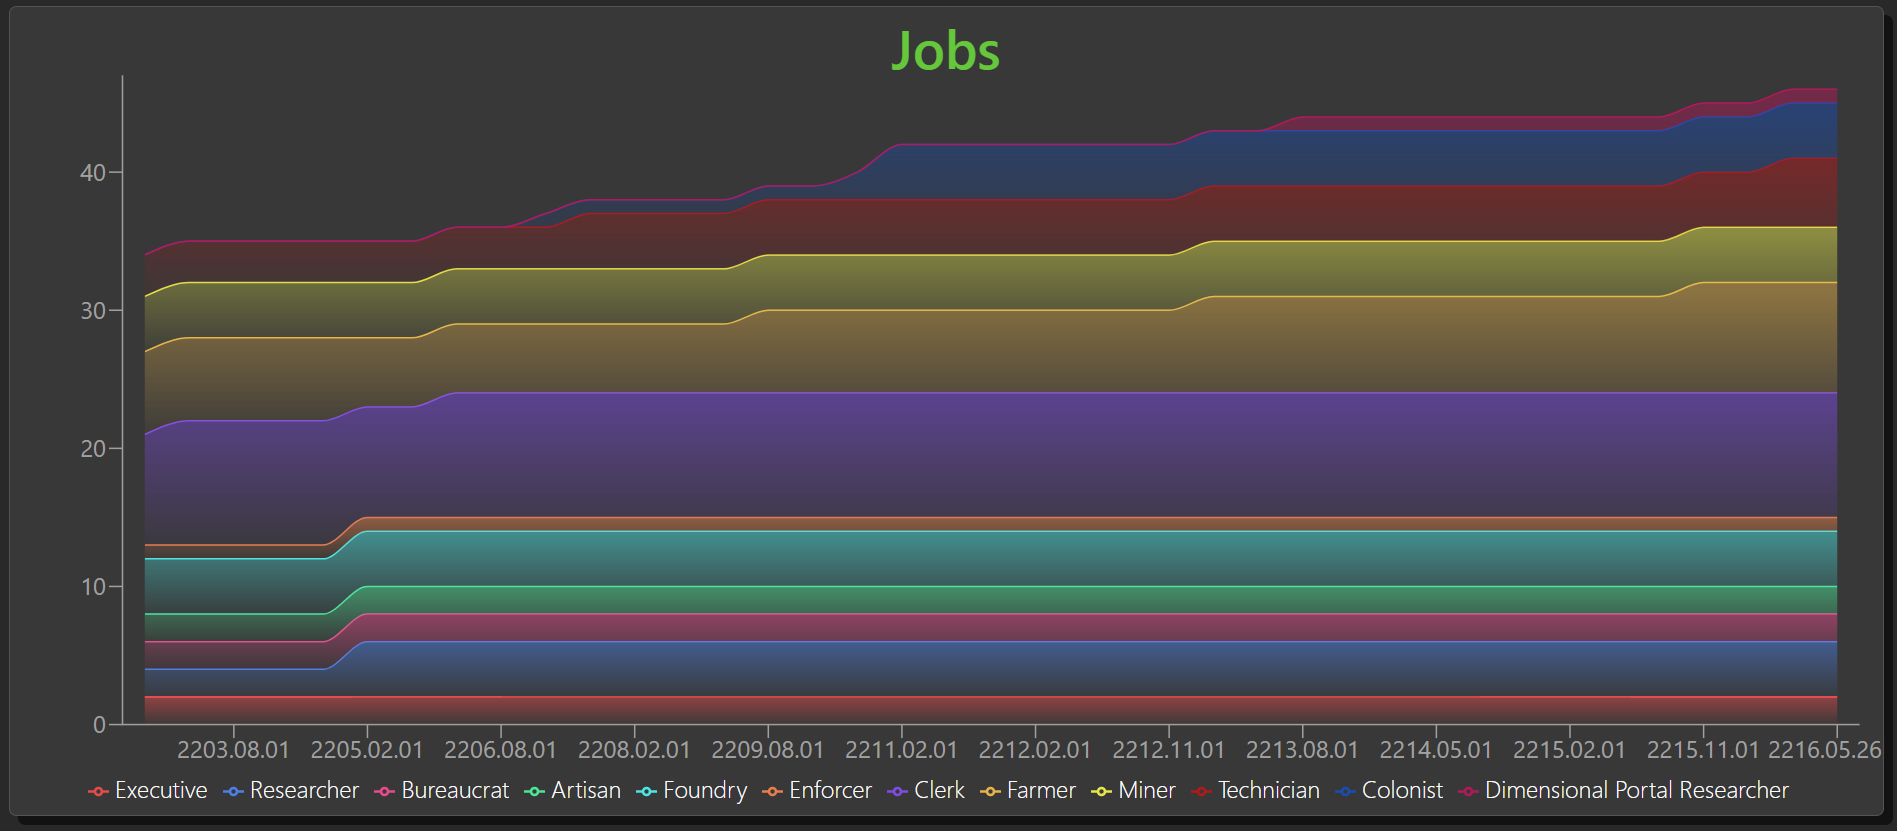 Jobs Breakdown